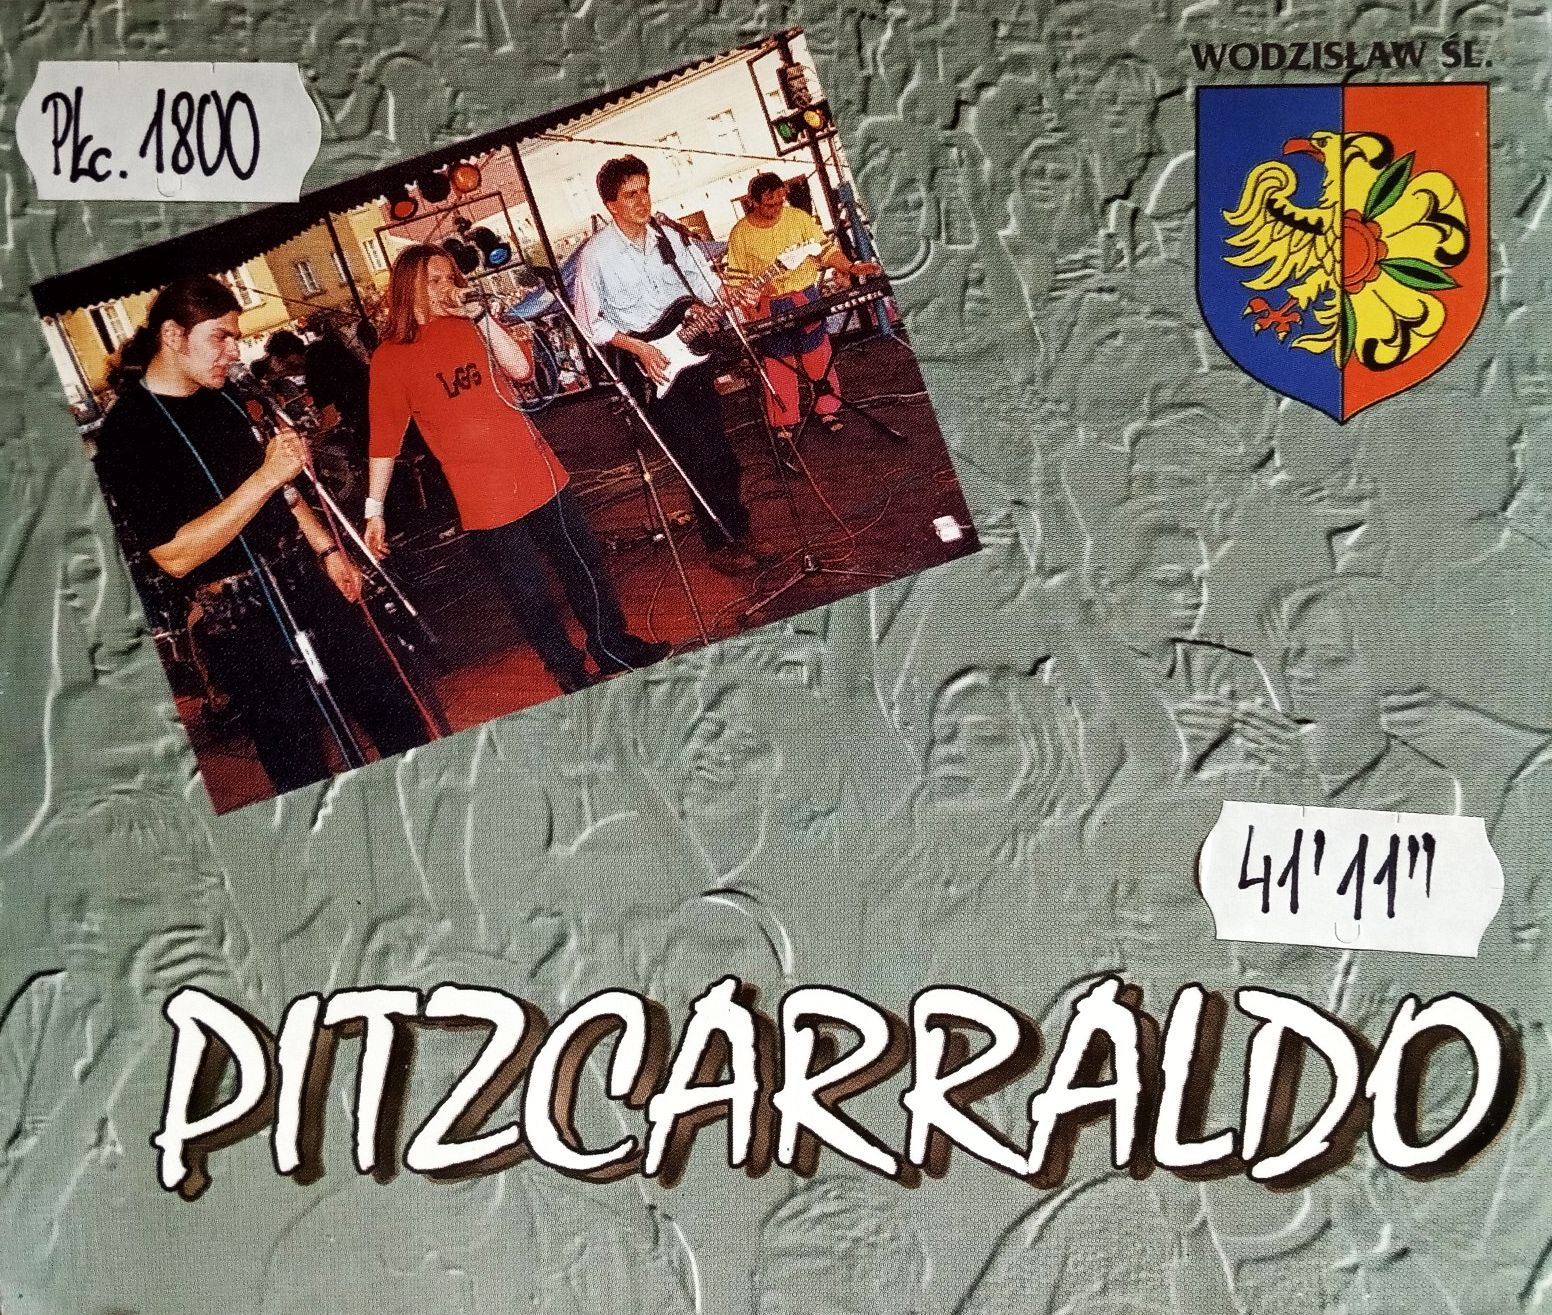 PITZCARRALDO – Pitzcarraldo